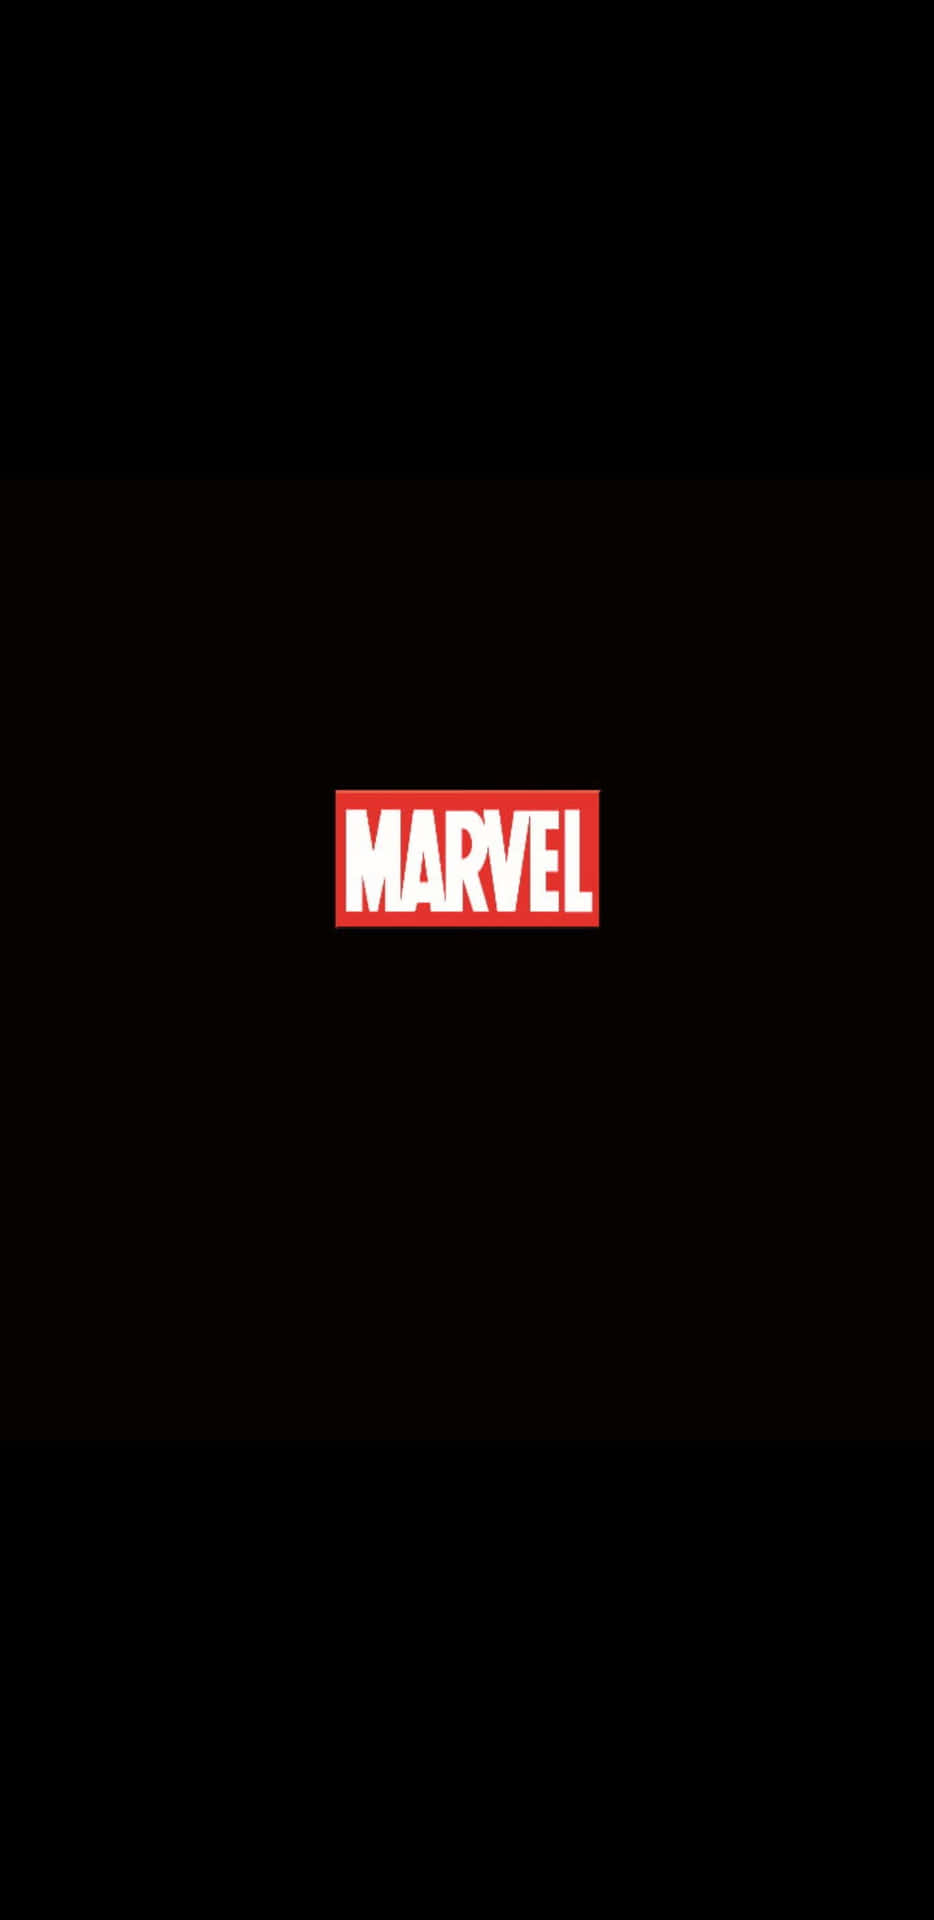 Fondode Pantalla Minimalista Del Logotipo De Marvel En Pixel 3xl